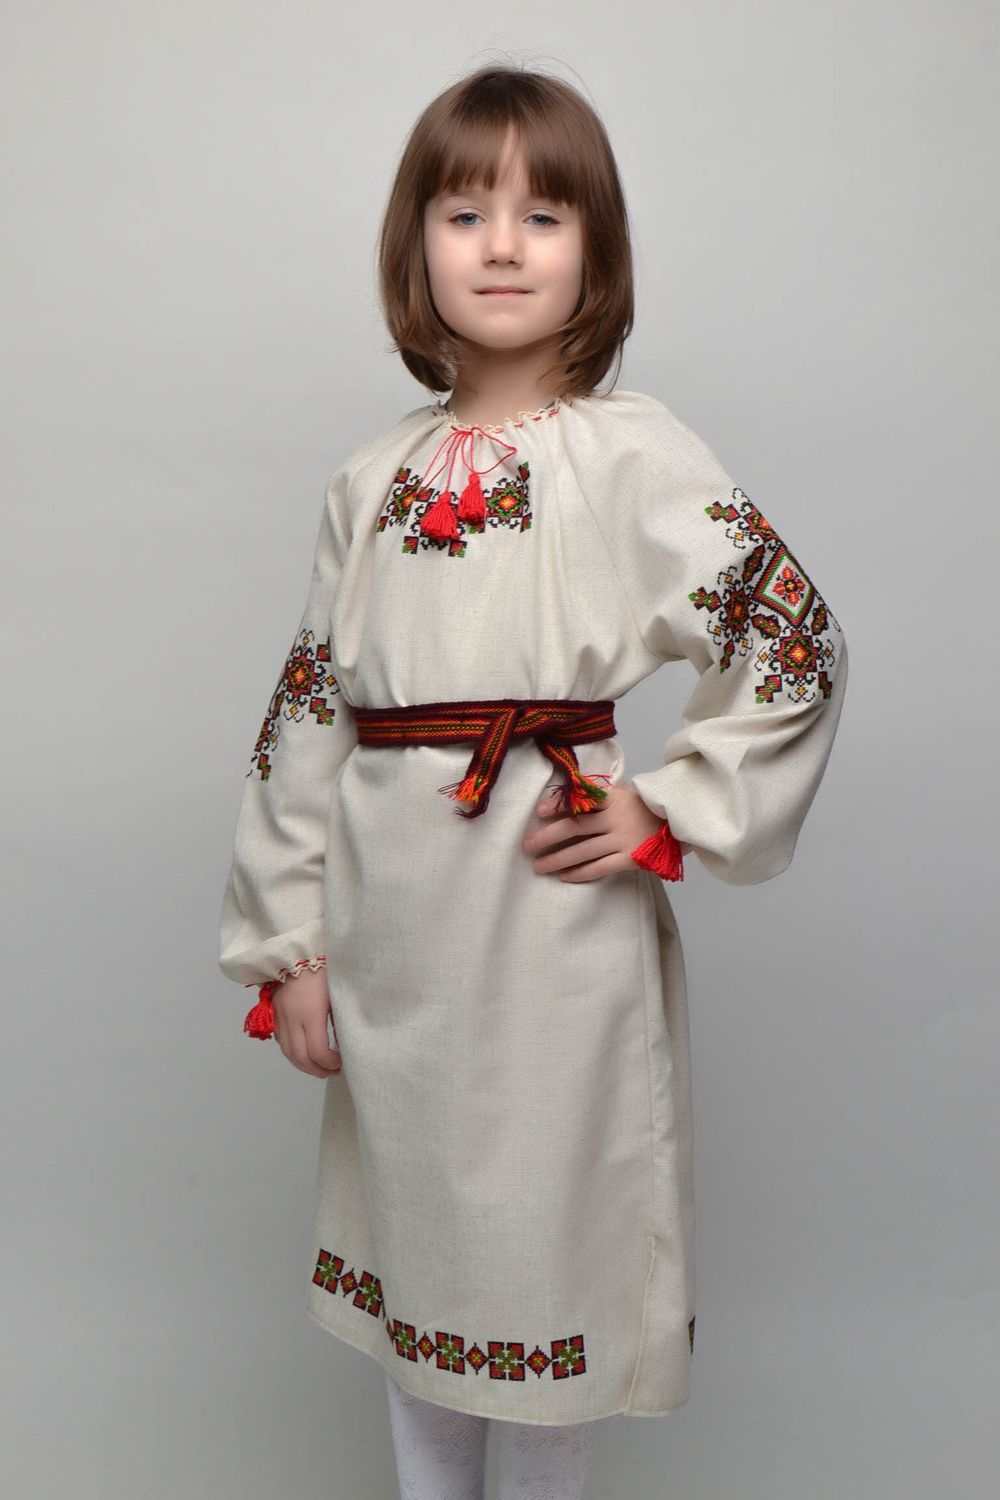 Robe brodée au point de croix avec ceinture pour enfant  photo 1